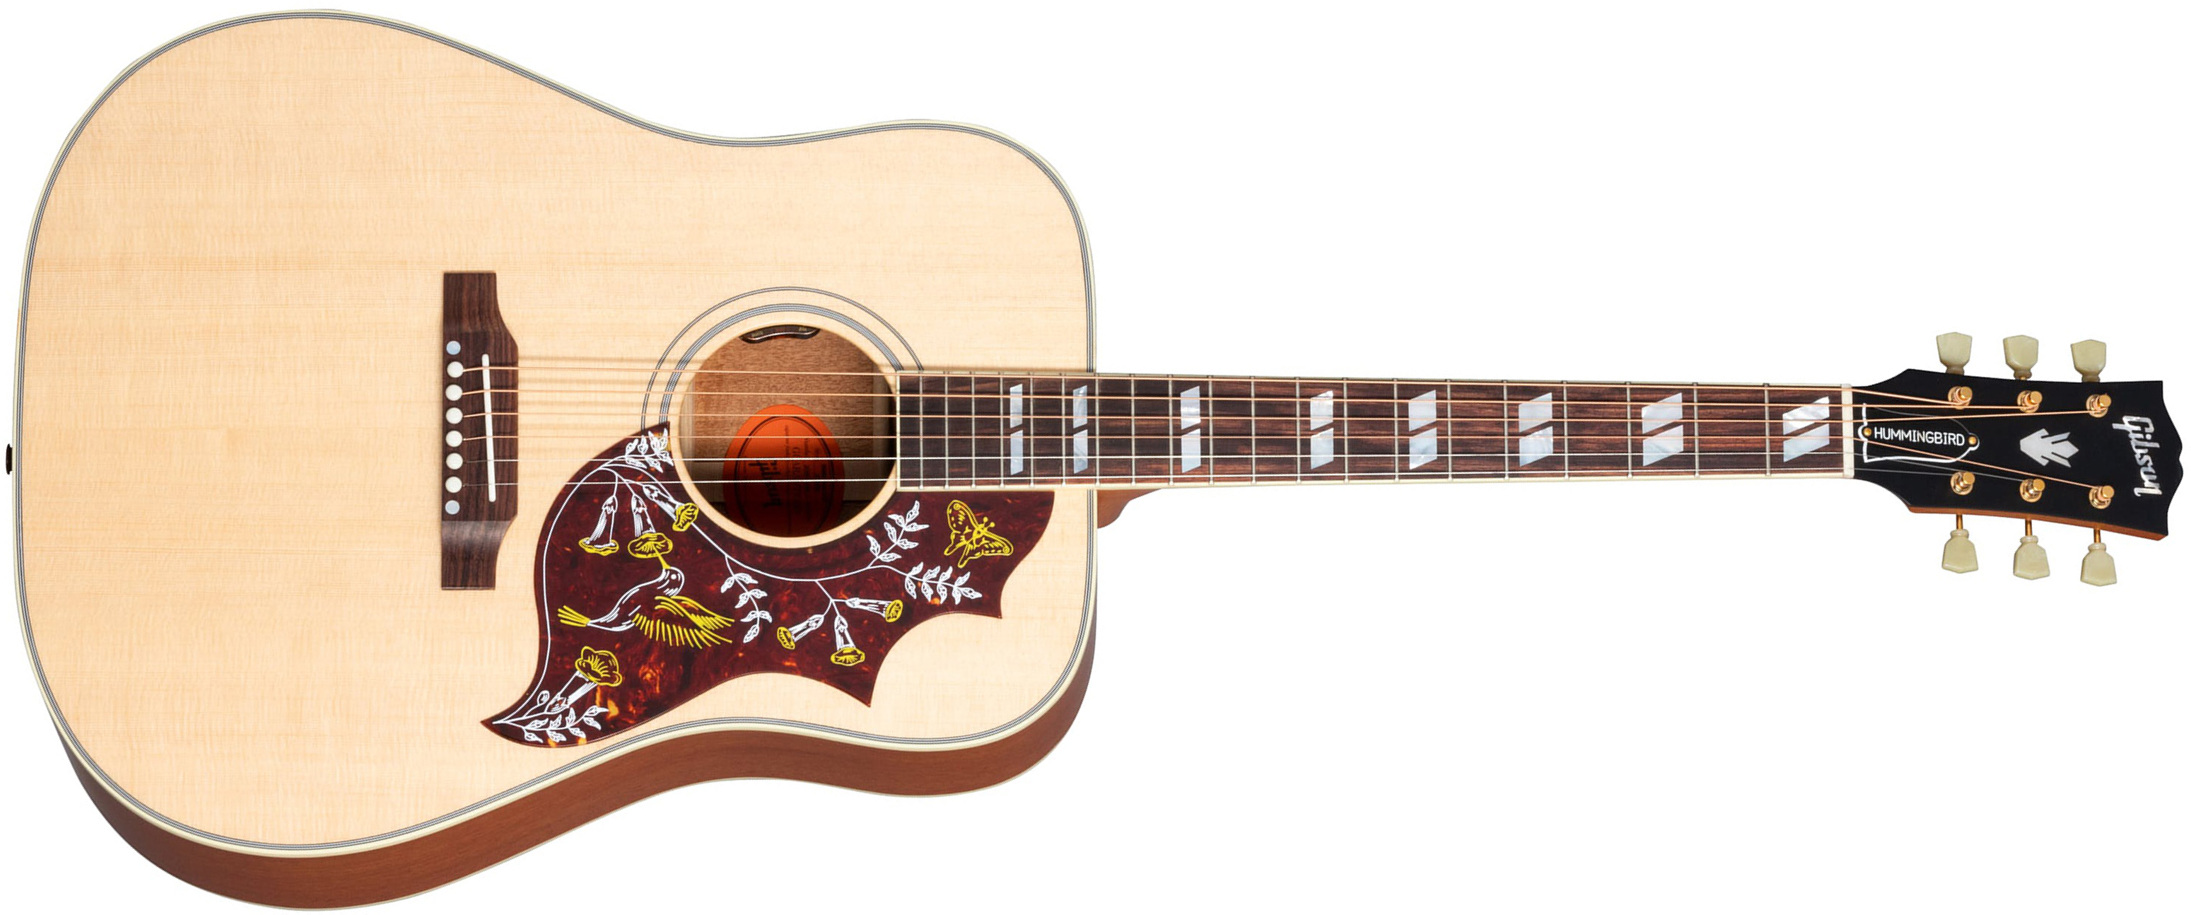 Gibson Hummingbird Faded Original Dreadnought Epicea Acajou Rw - Antique Natural - Guitarra acústica & electro - Main picture